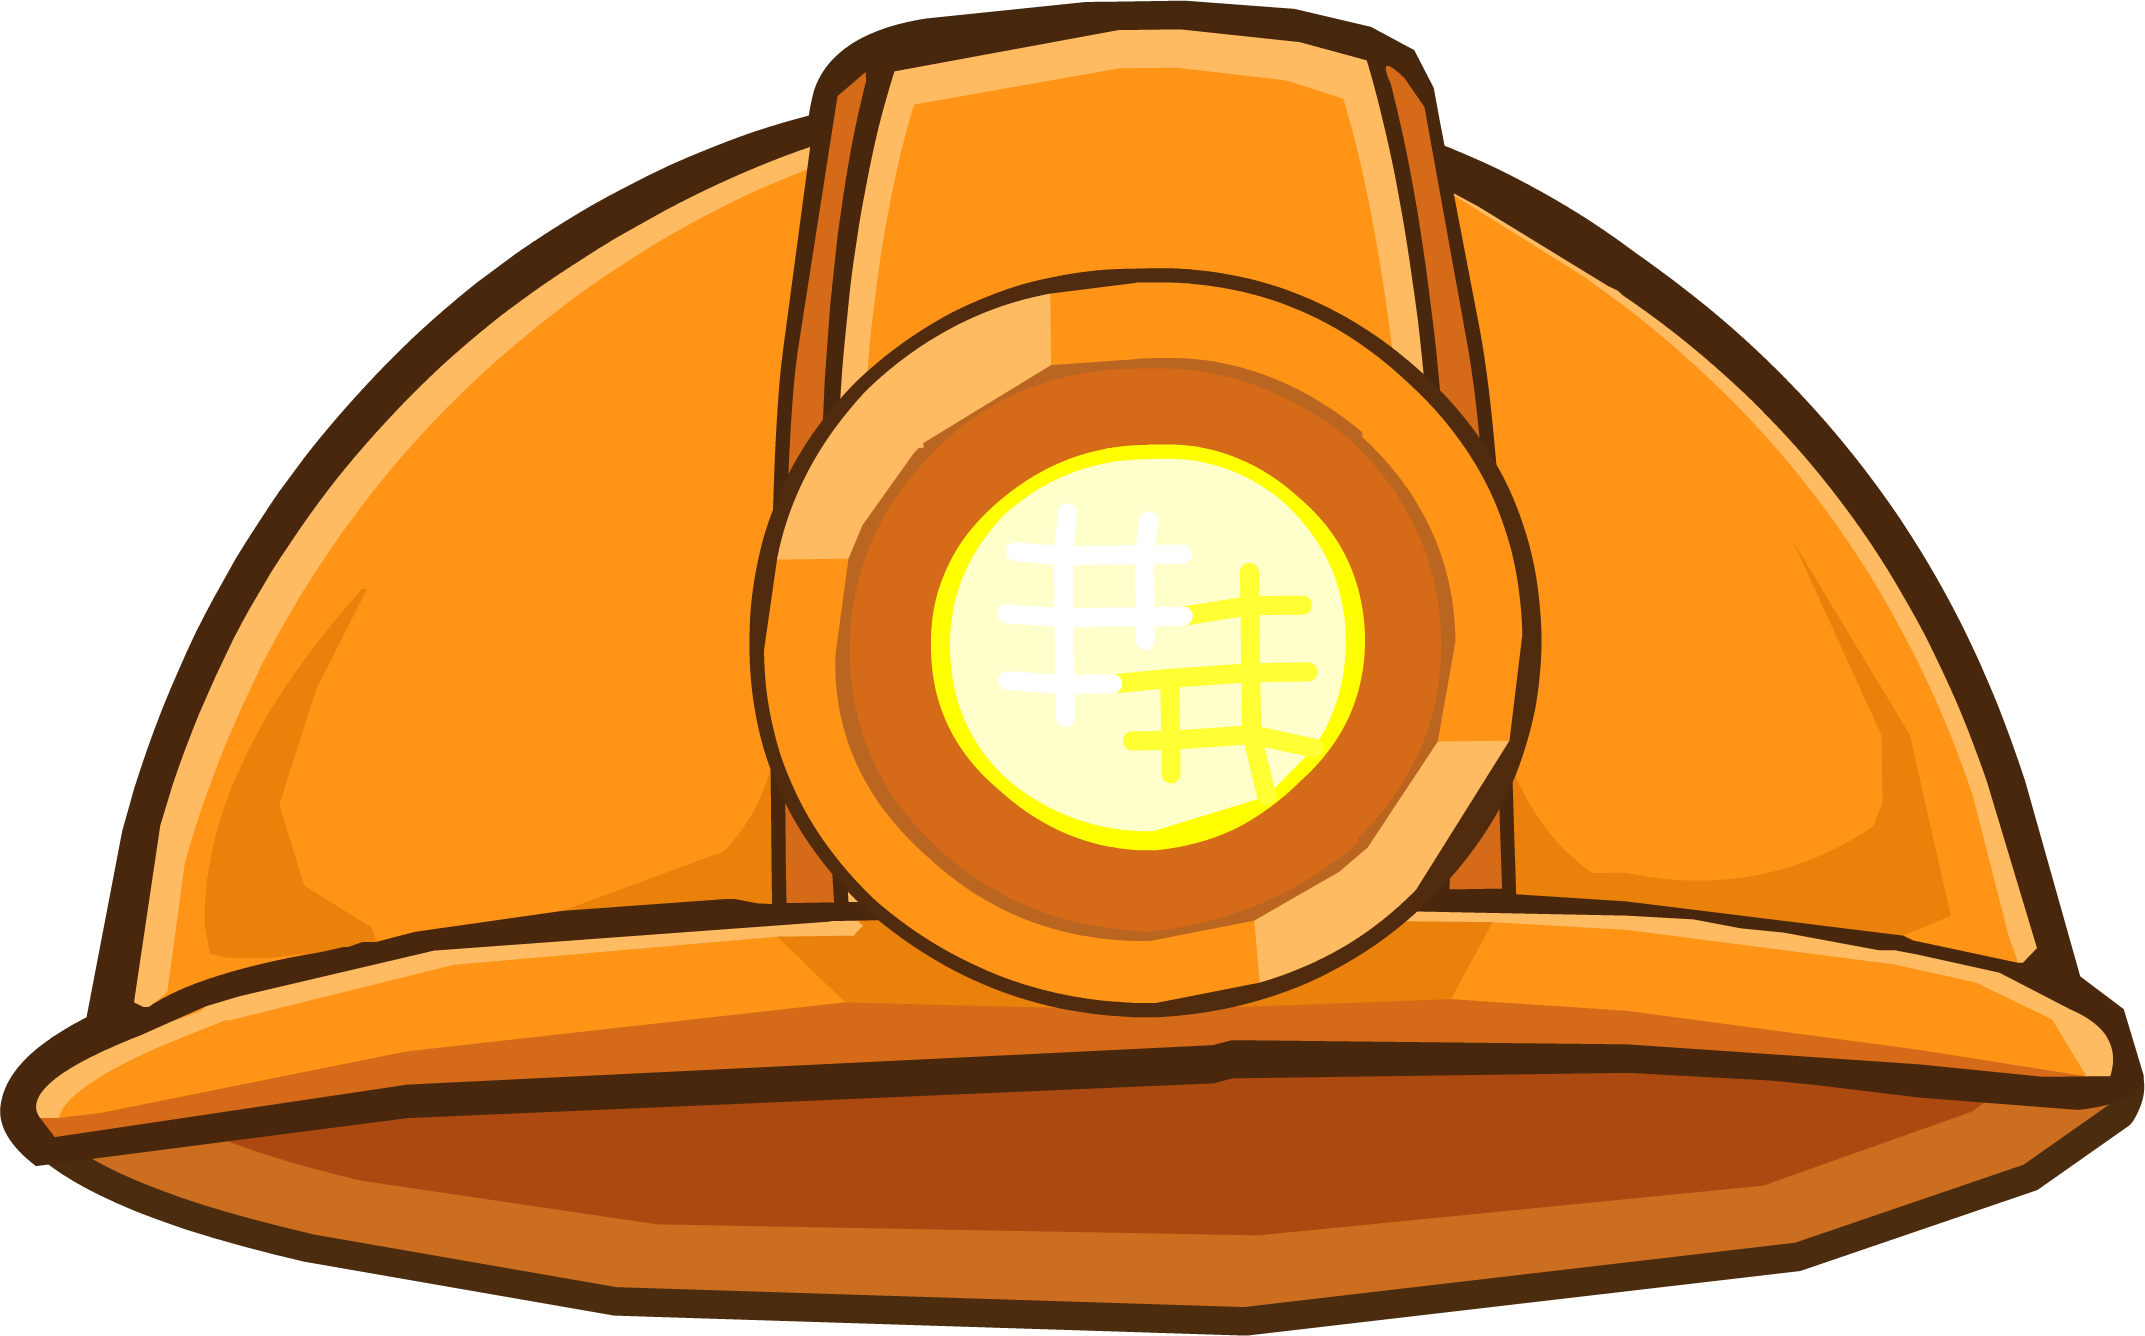 Hard Hats Mining Helmet Mining Helmet - Mining Hat (2145x1336)